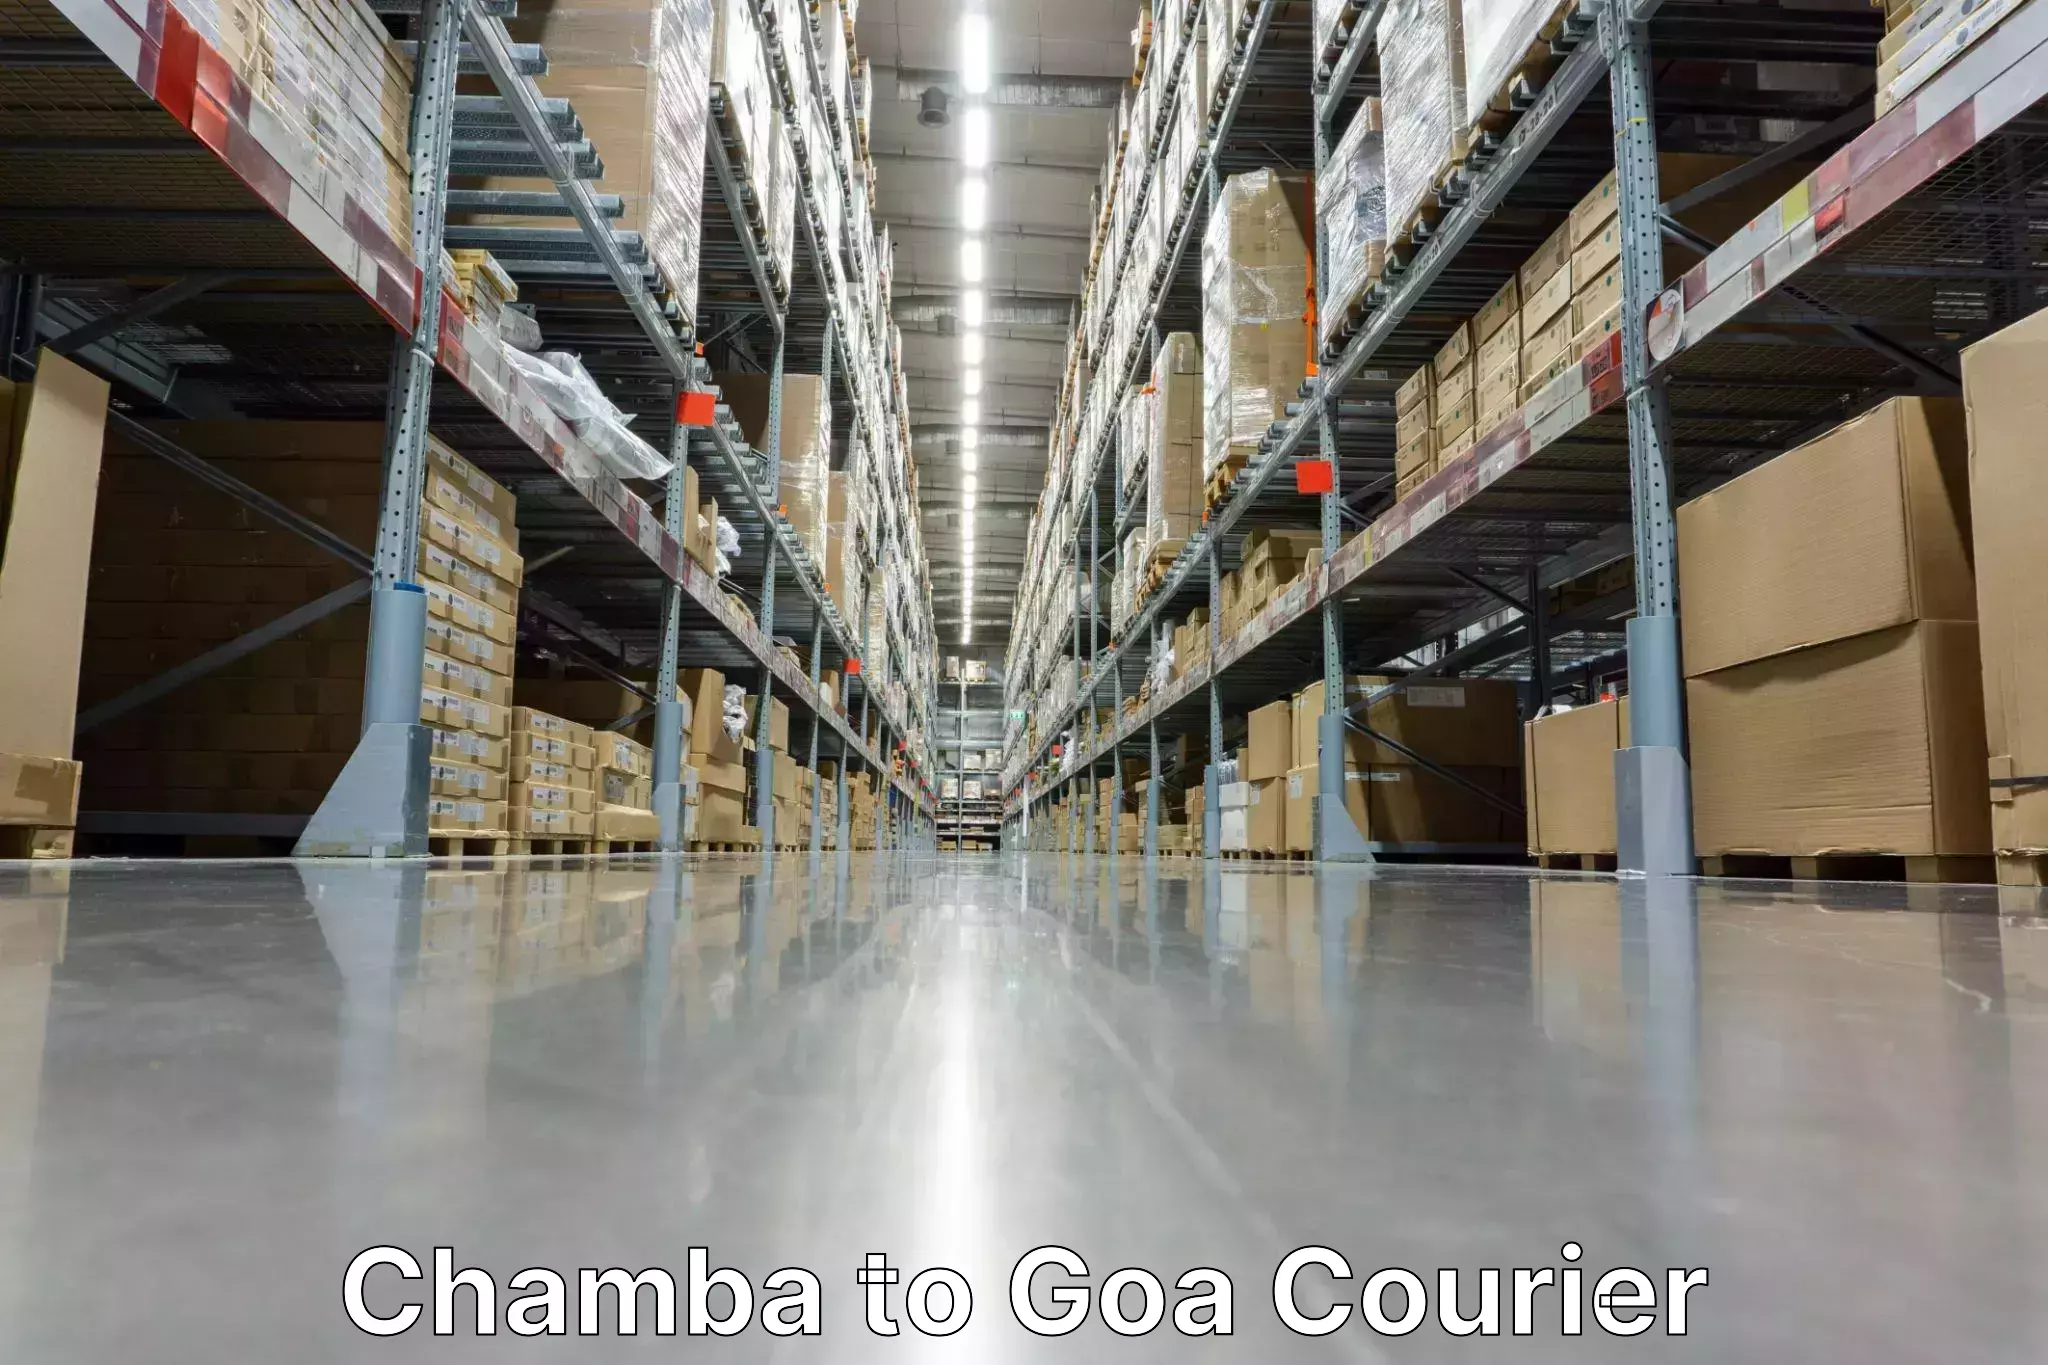 Local courier options Chamba to Vasco da Gama